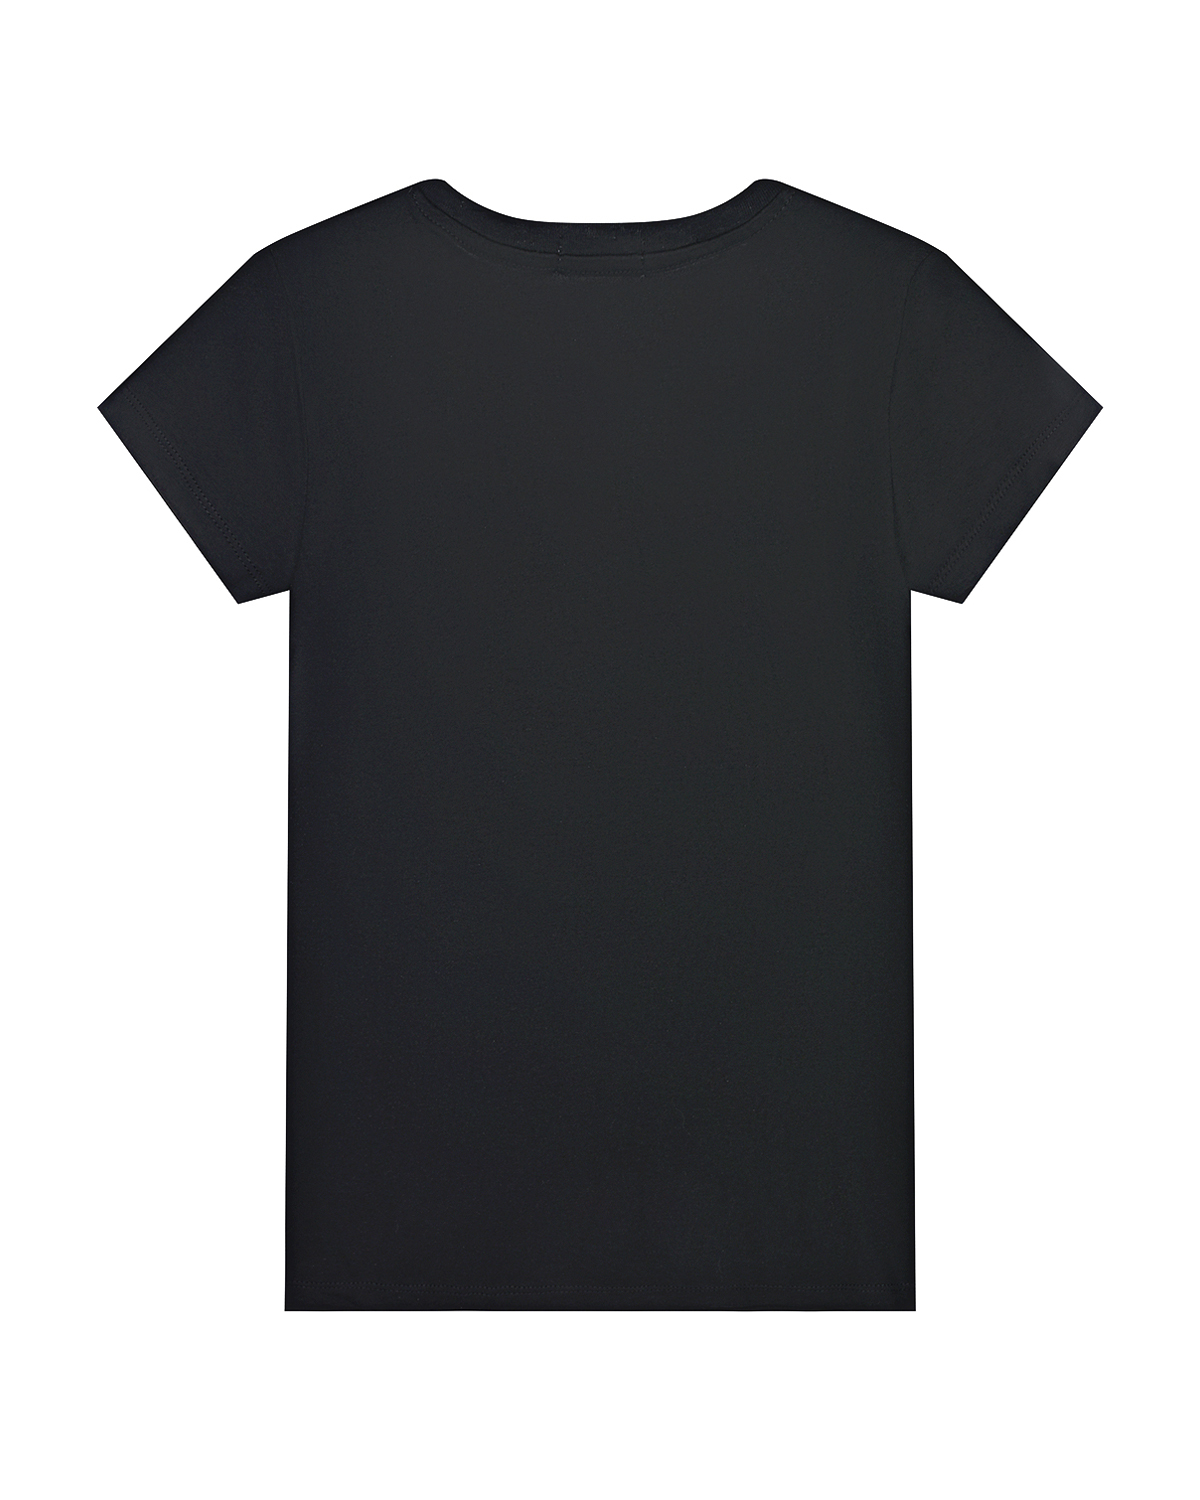 Черная футболка с белым логотипом Calvin Klein детская, размер 152, цвет черный - фото 2